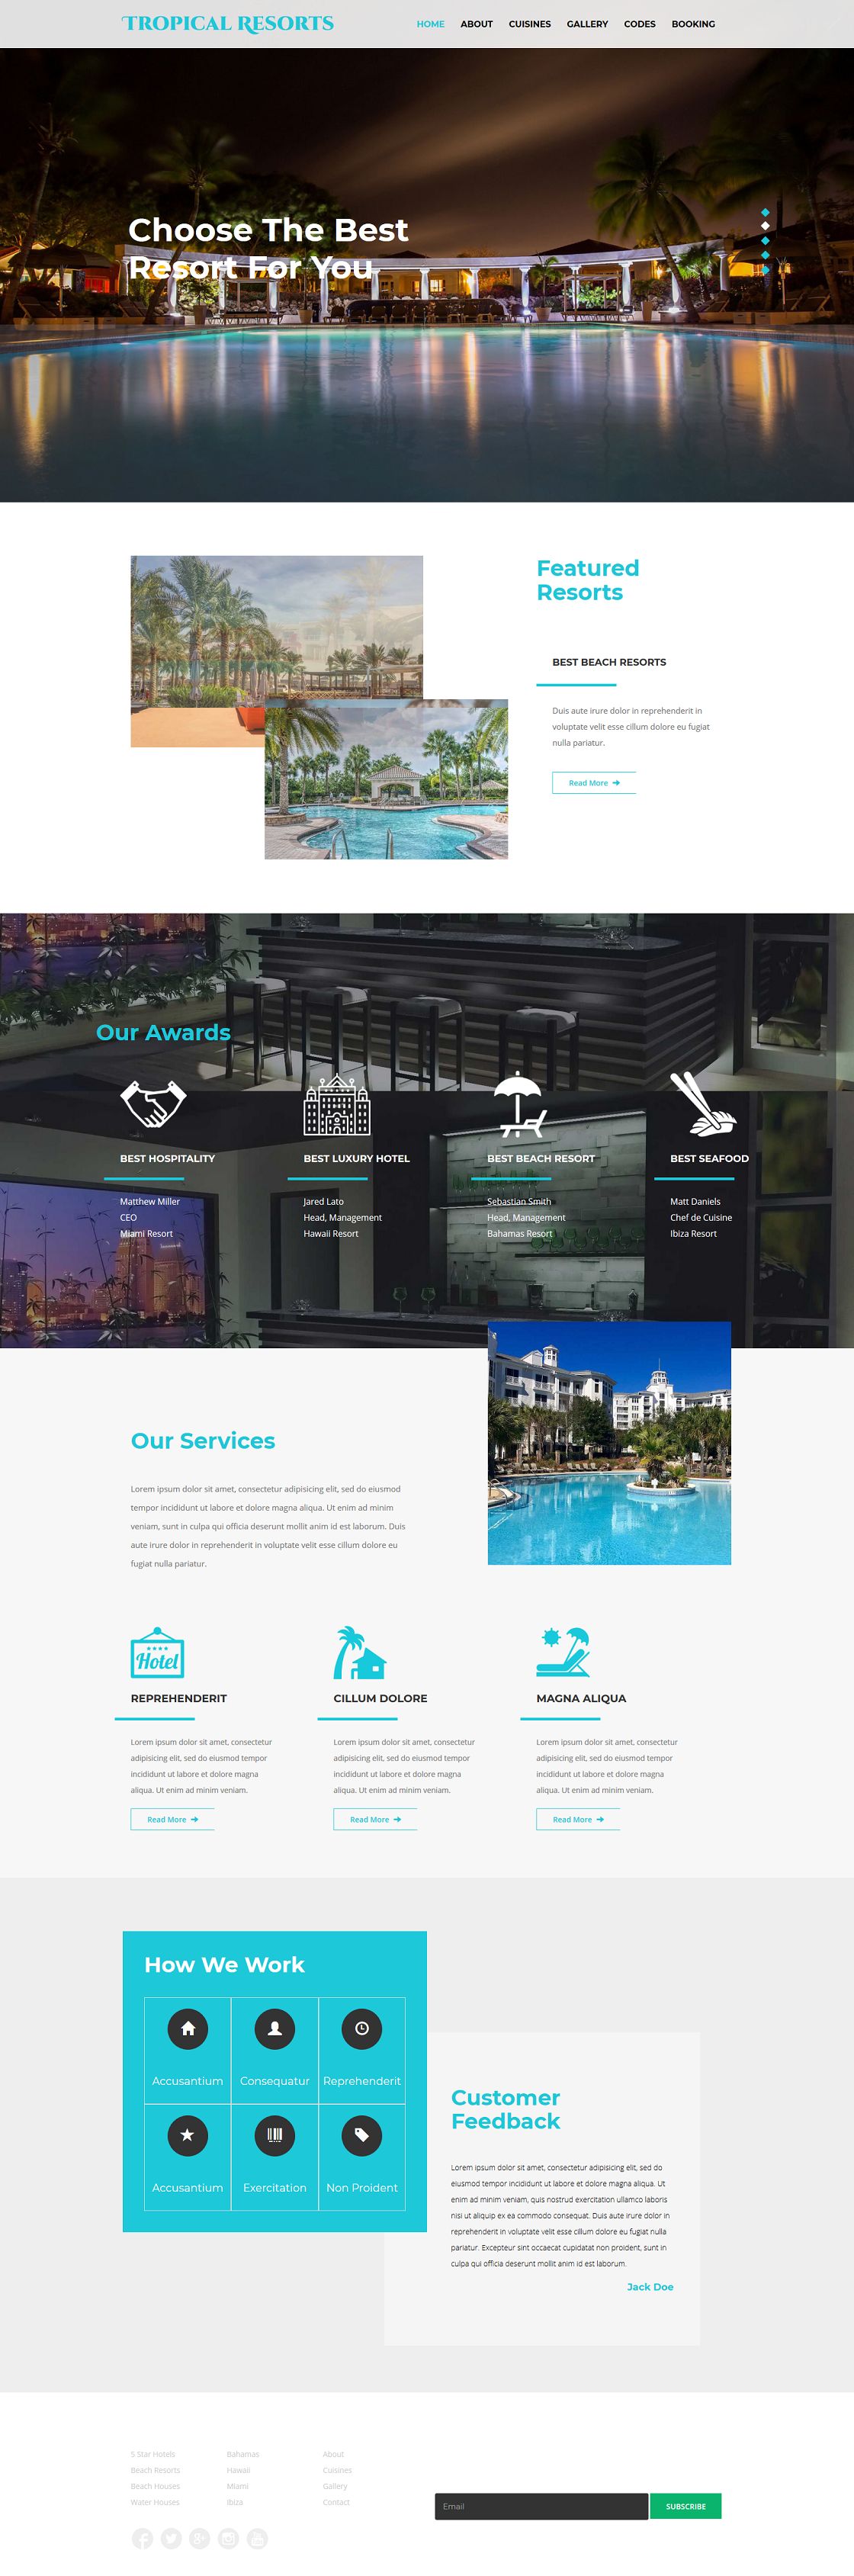 海滩温泉三亚度假酒店会所网站响应式单页旅游模板